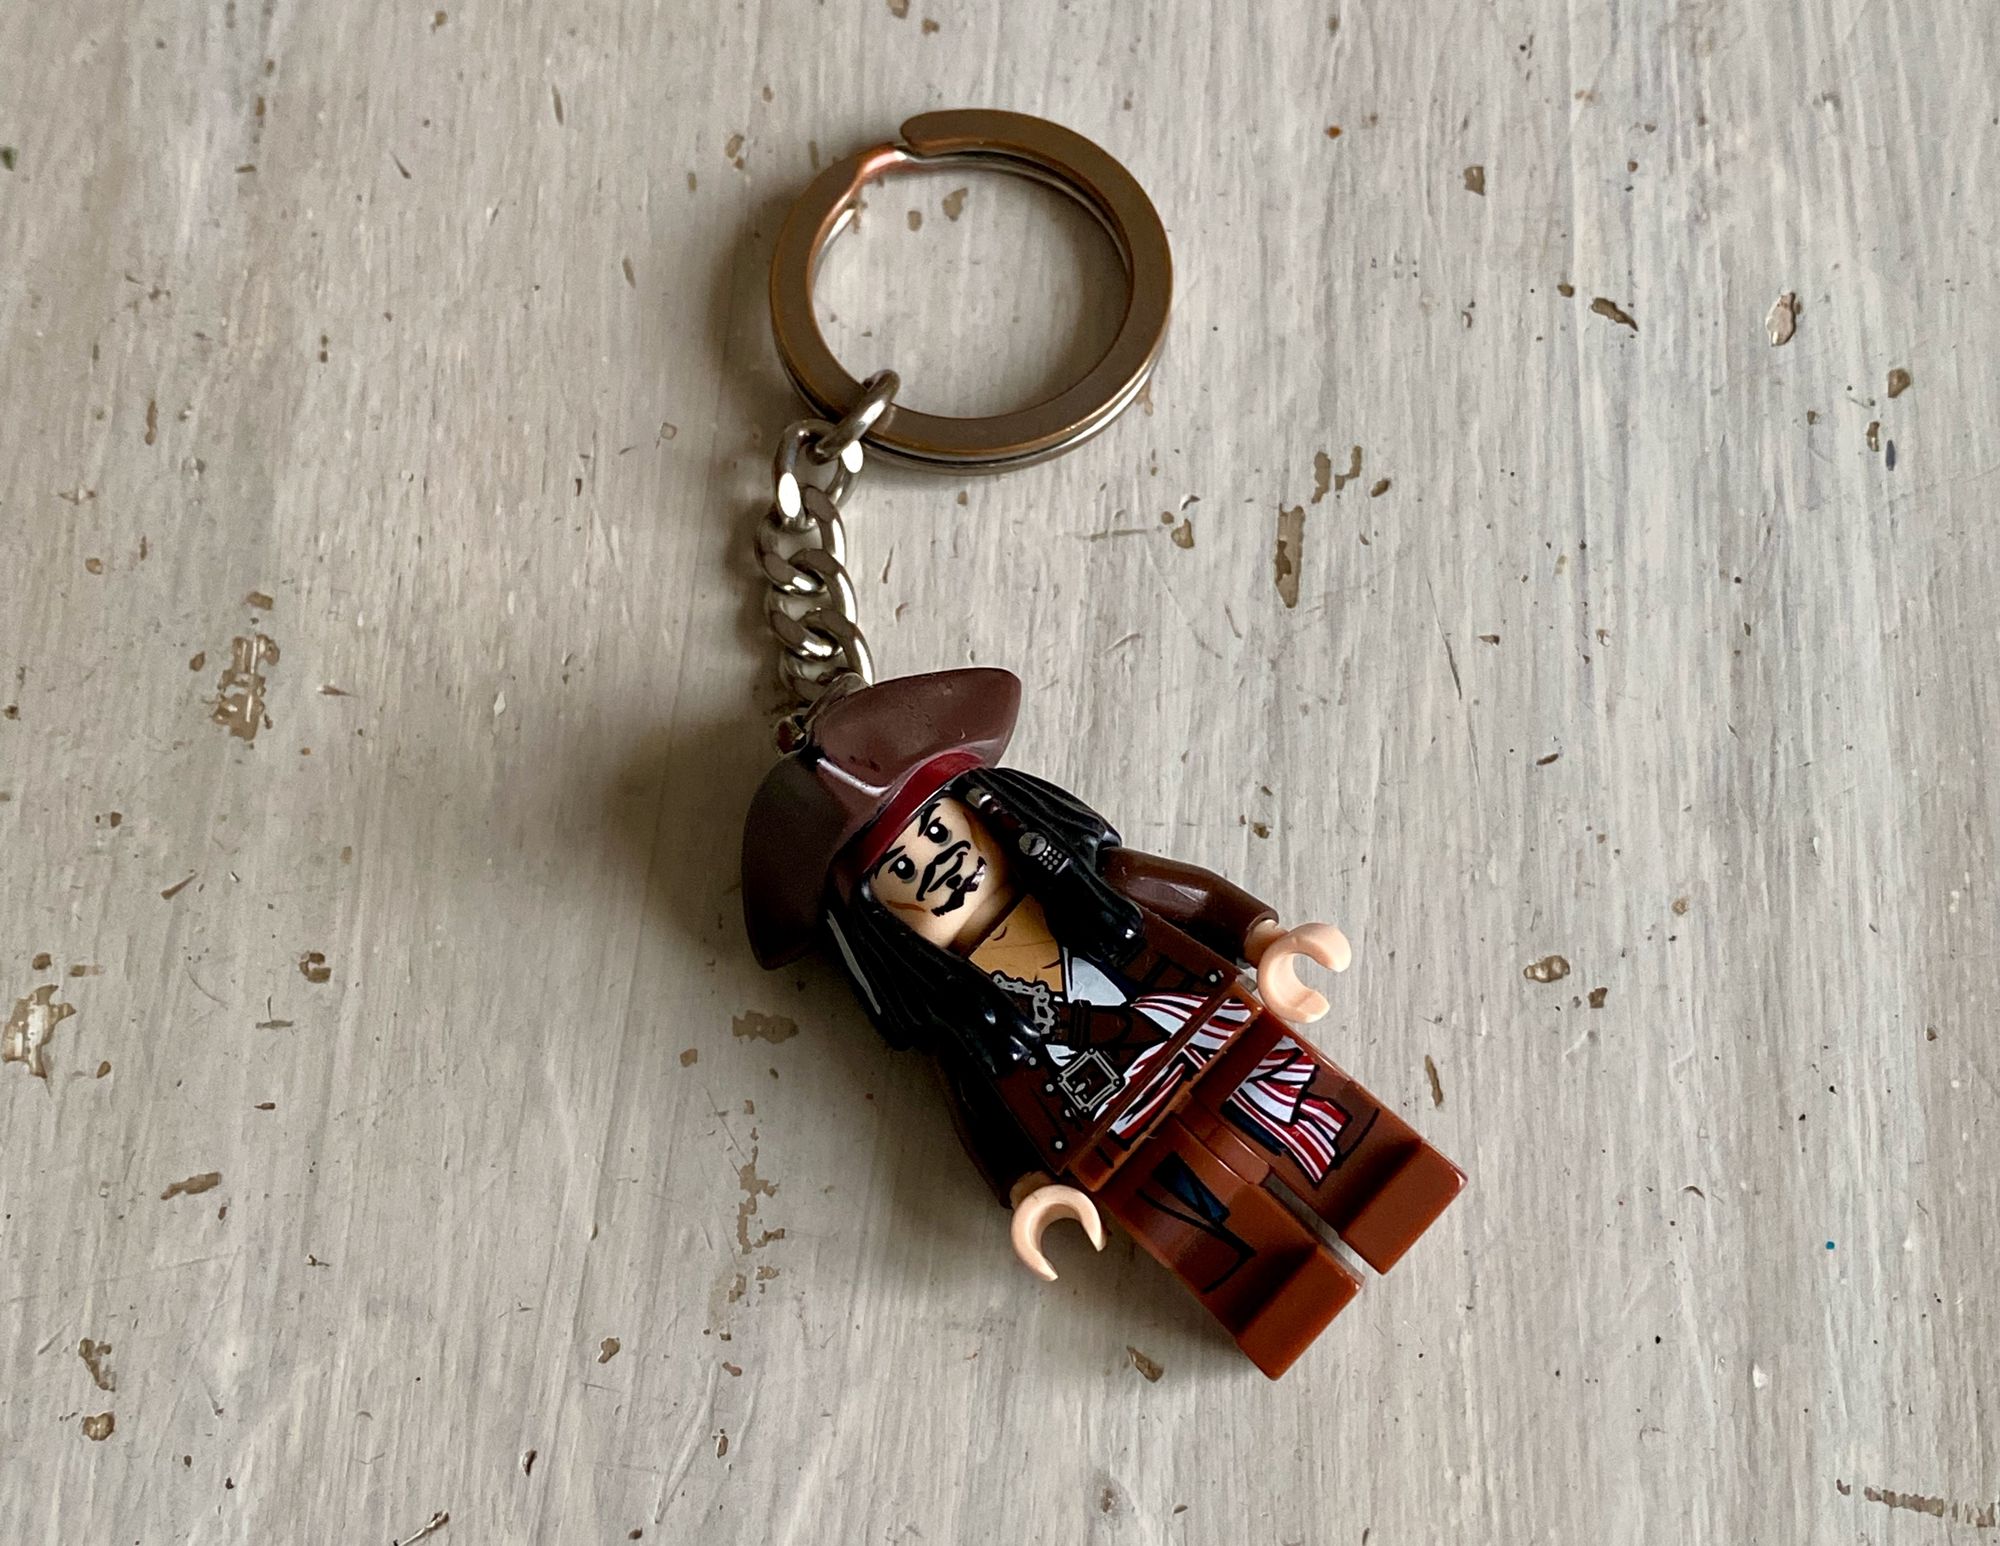 Porte-clé Lego Jack Sparrow